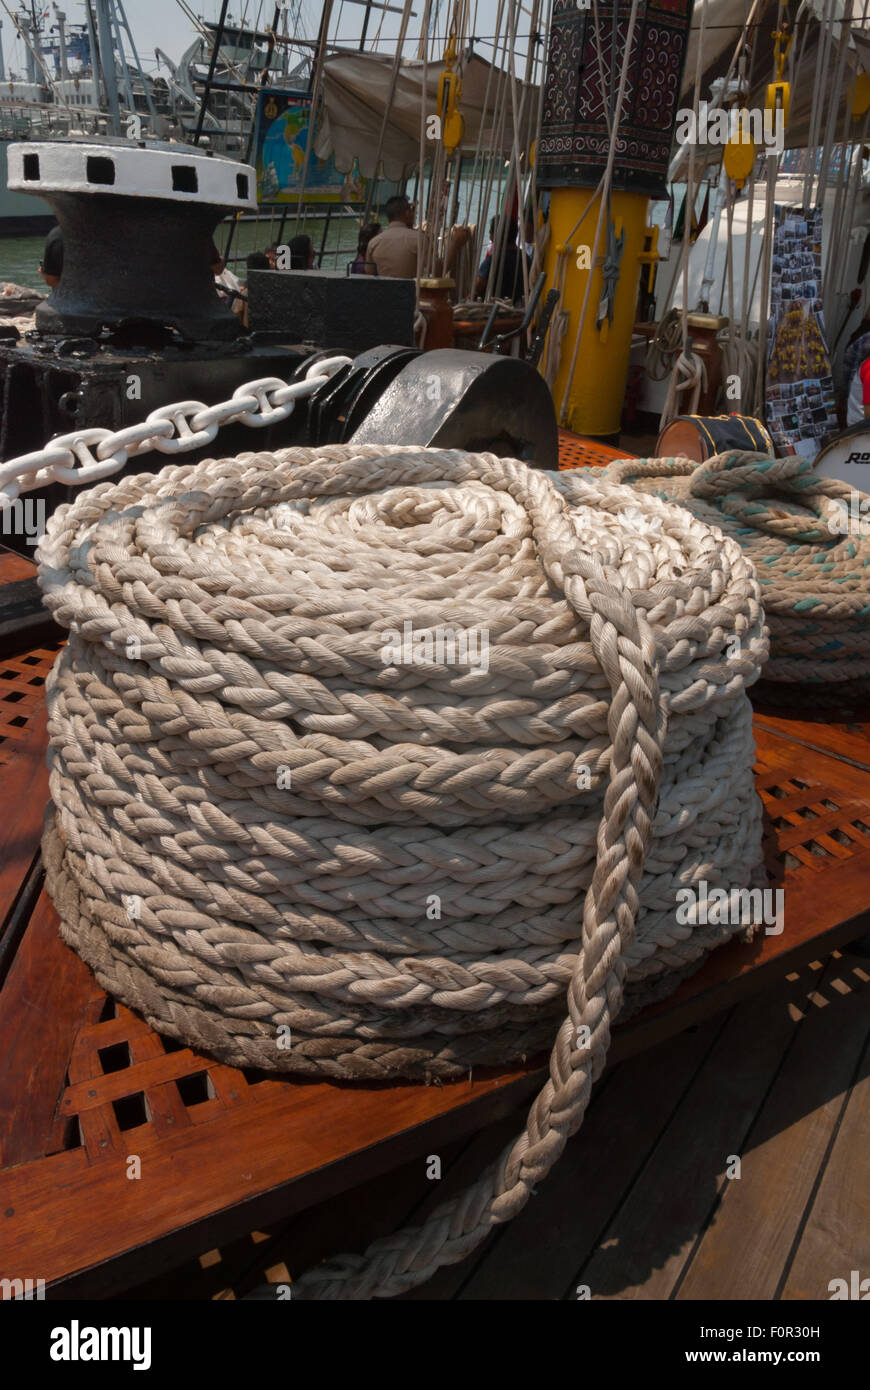 Corde blanche enroulée sur le navire à lettres Dewaruci de la marine indonésienne, dans le port de Kolinlamil, Tanjung Priok, dans le nord de Jakarta, Jakarta, Indonésie. Banque D'Images